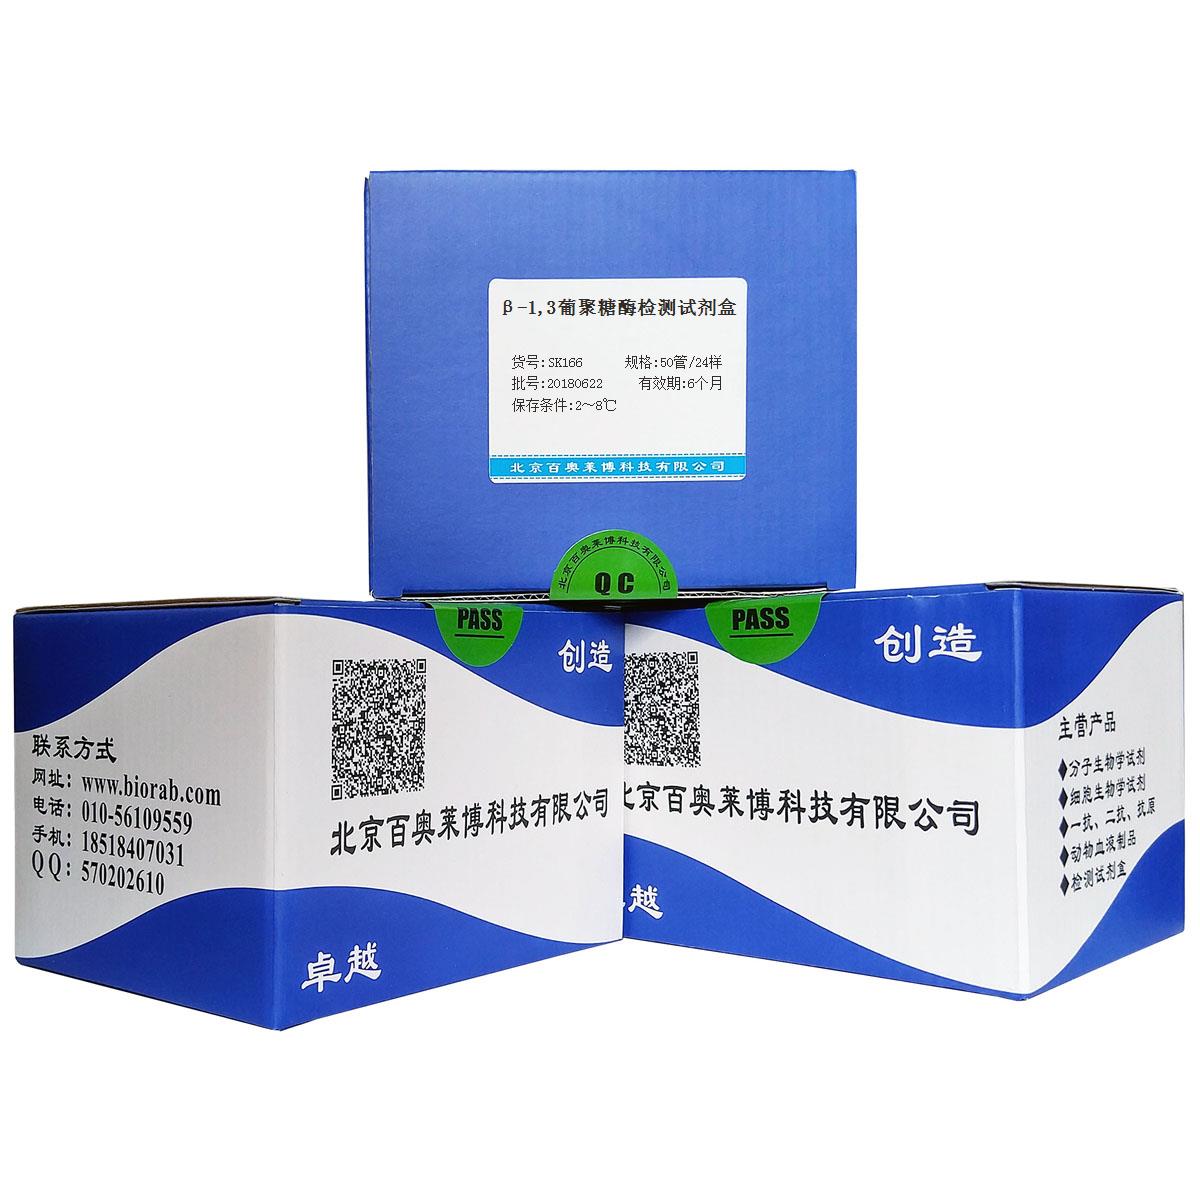 β-1,3葡聚糖酶检测试剂盒厂家价格